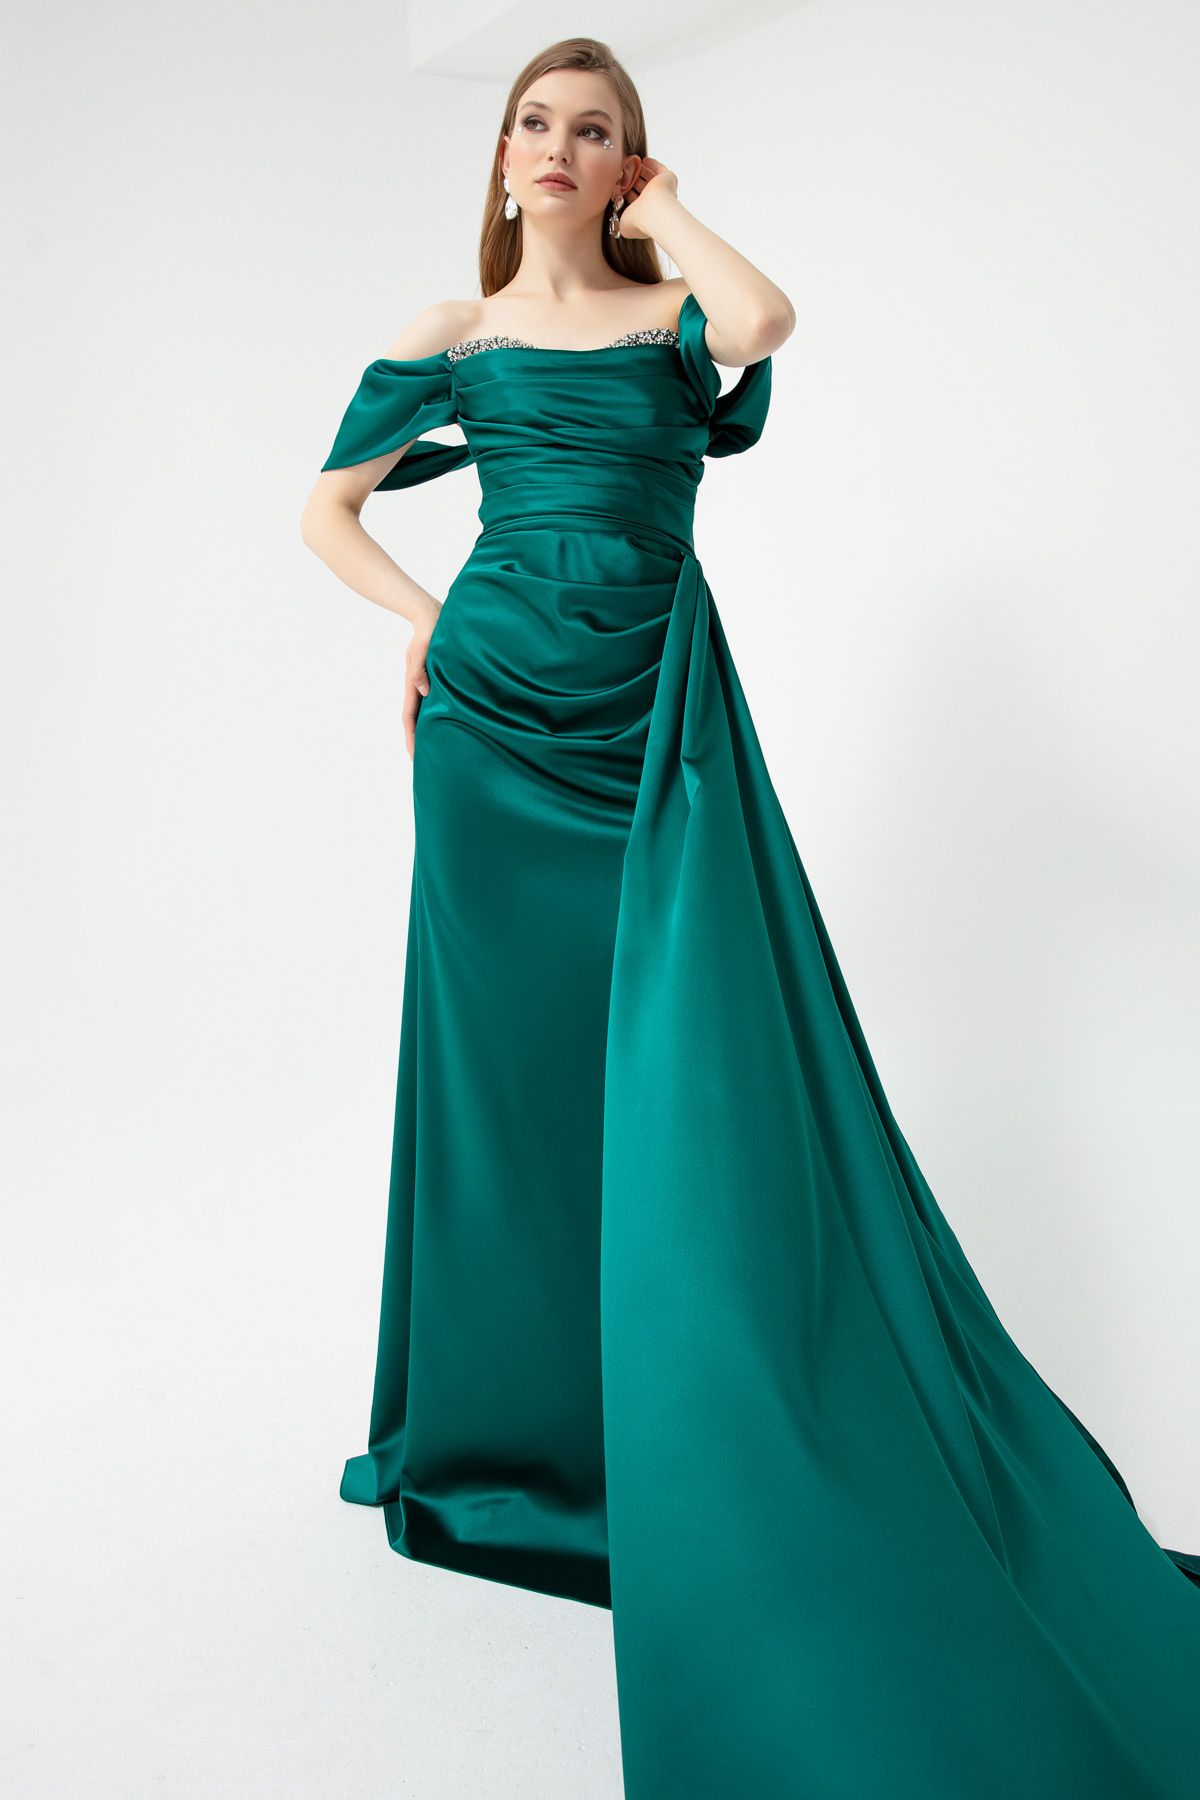 OFZE Kadın Zümrüt Yeşili Kayık Yaka Yırtmaçlı Uzun Saten Abiye Elbise